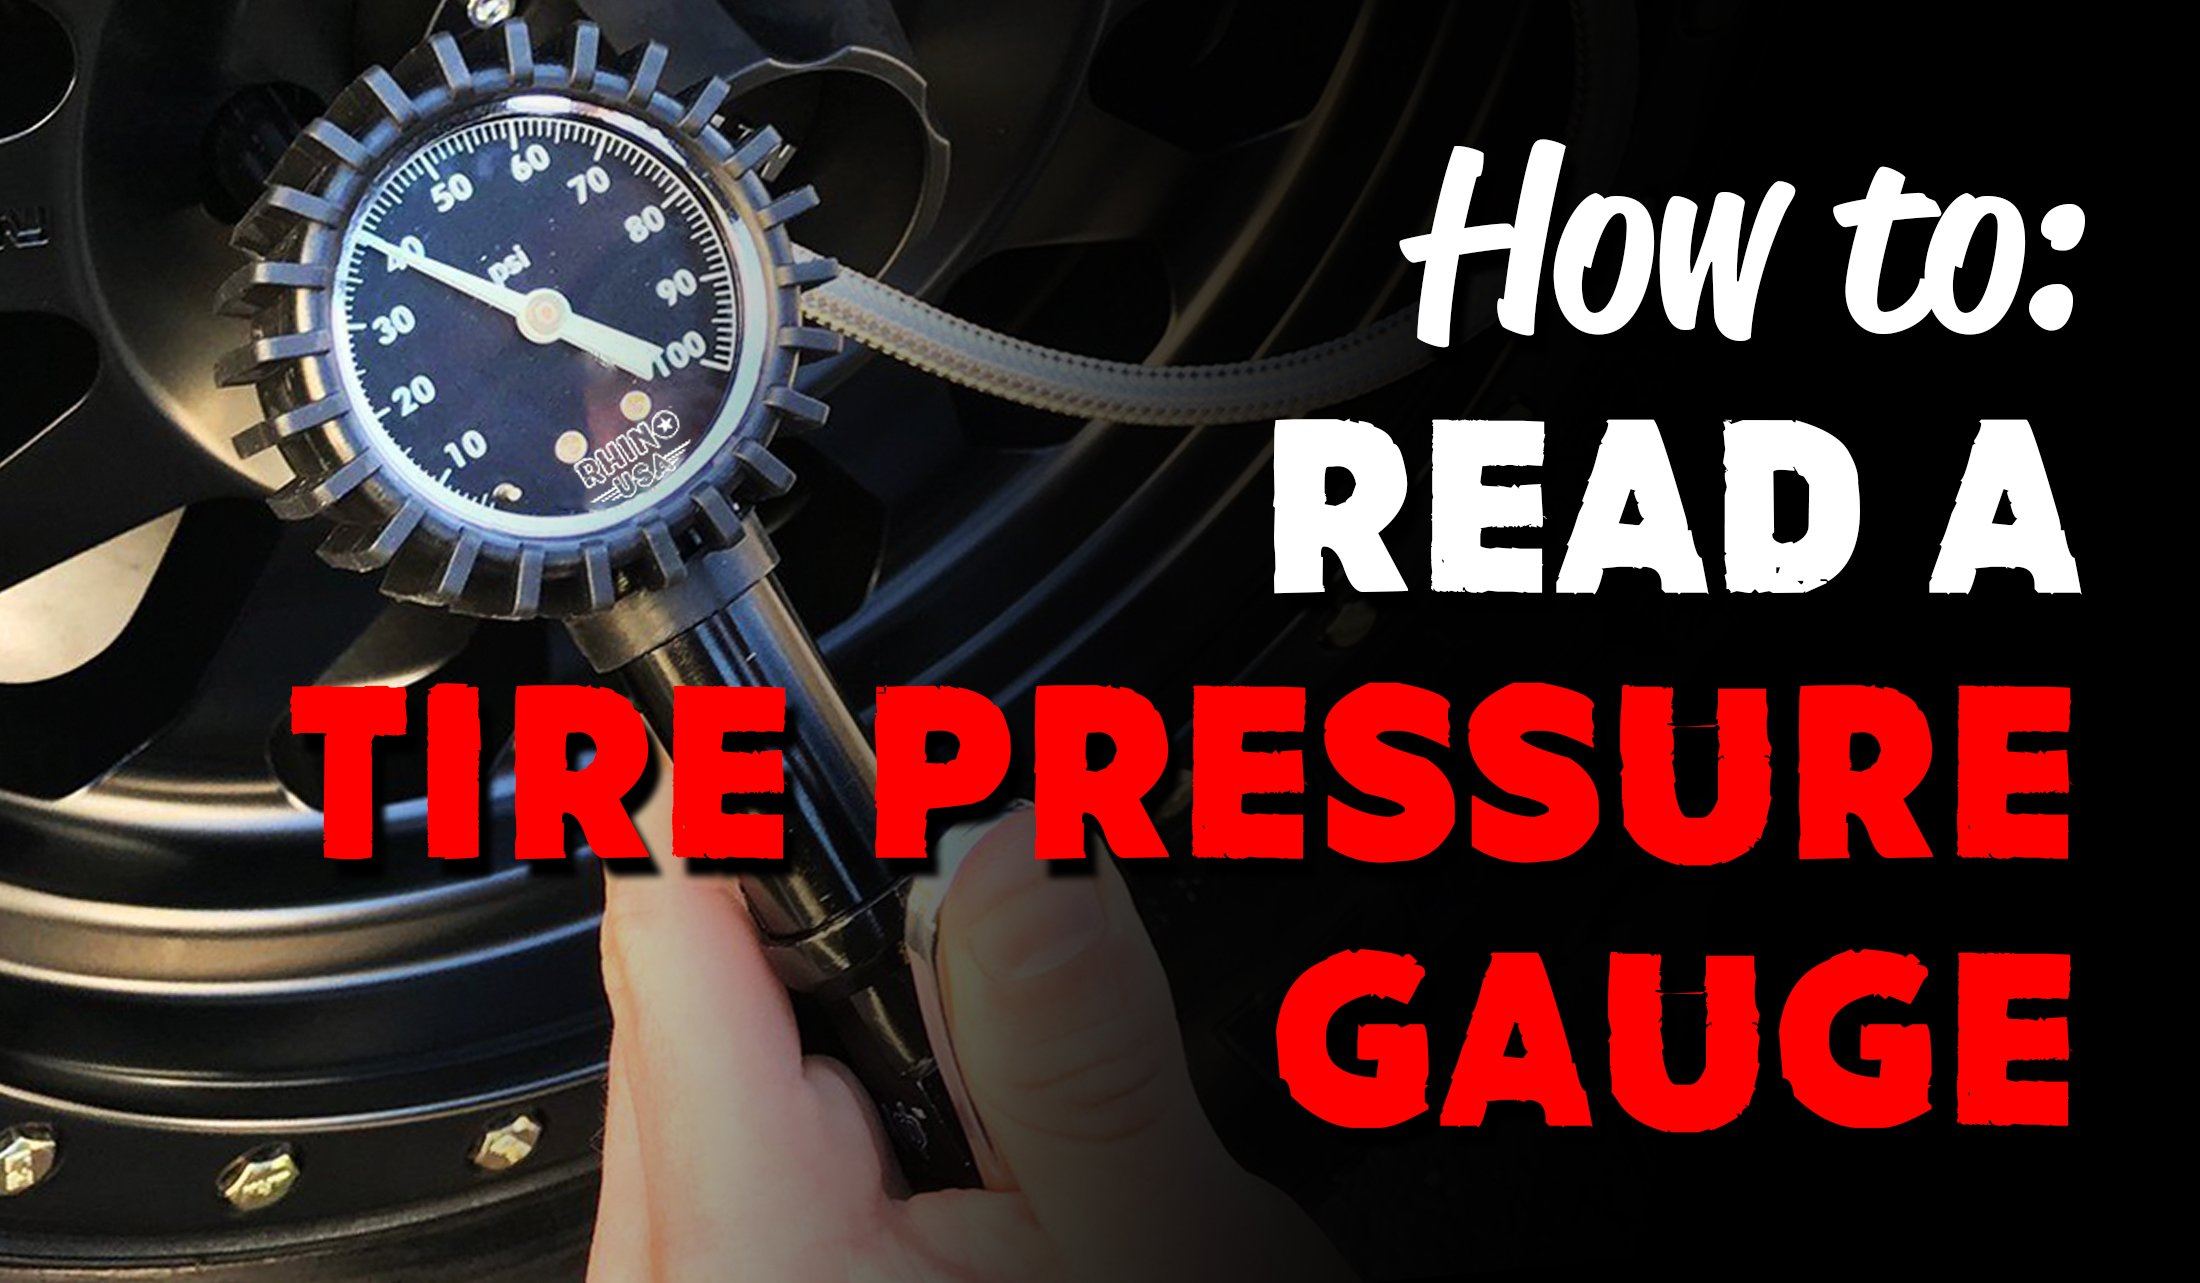 Tire Pressure Gauge May Read Low - MAC Tools Tire Pressure Gauge